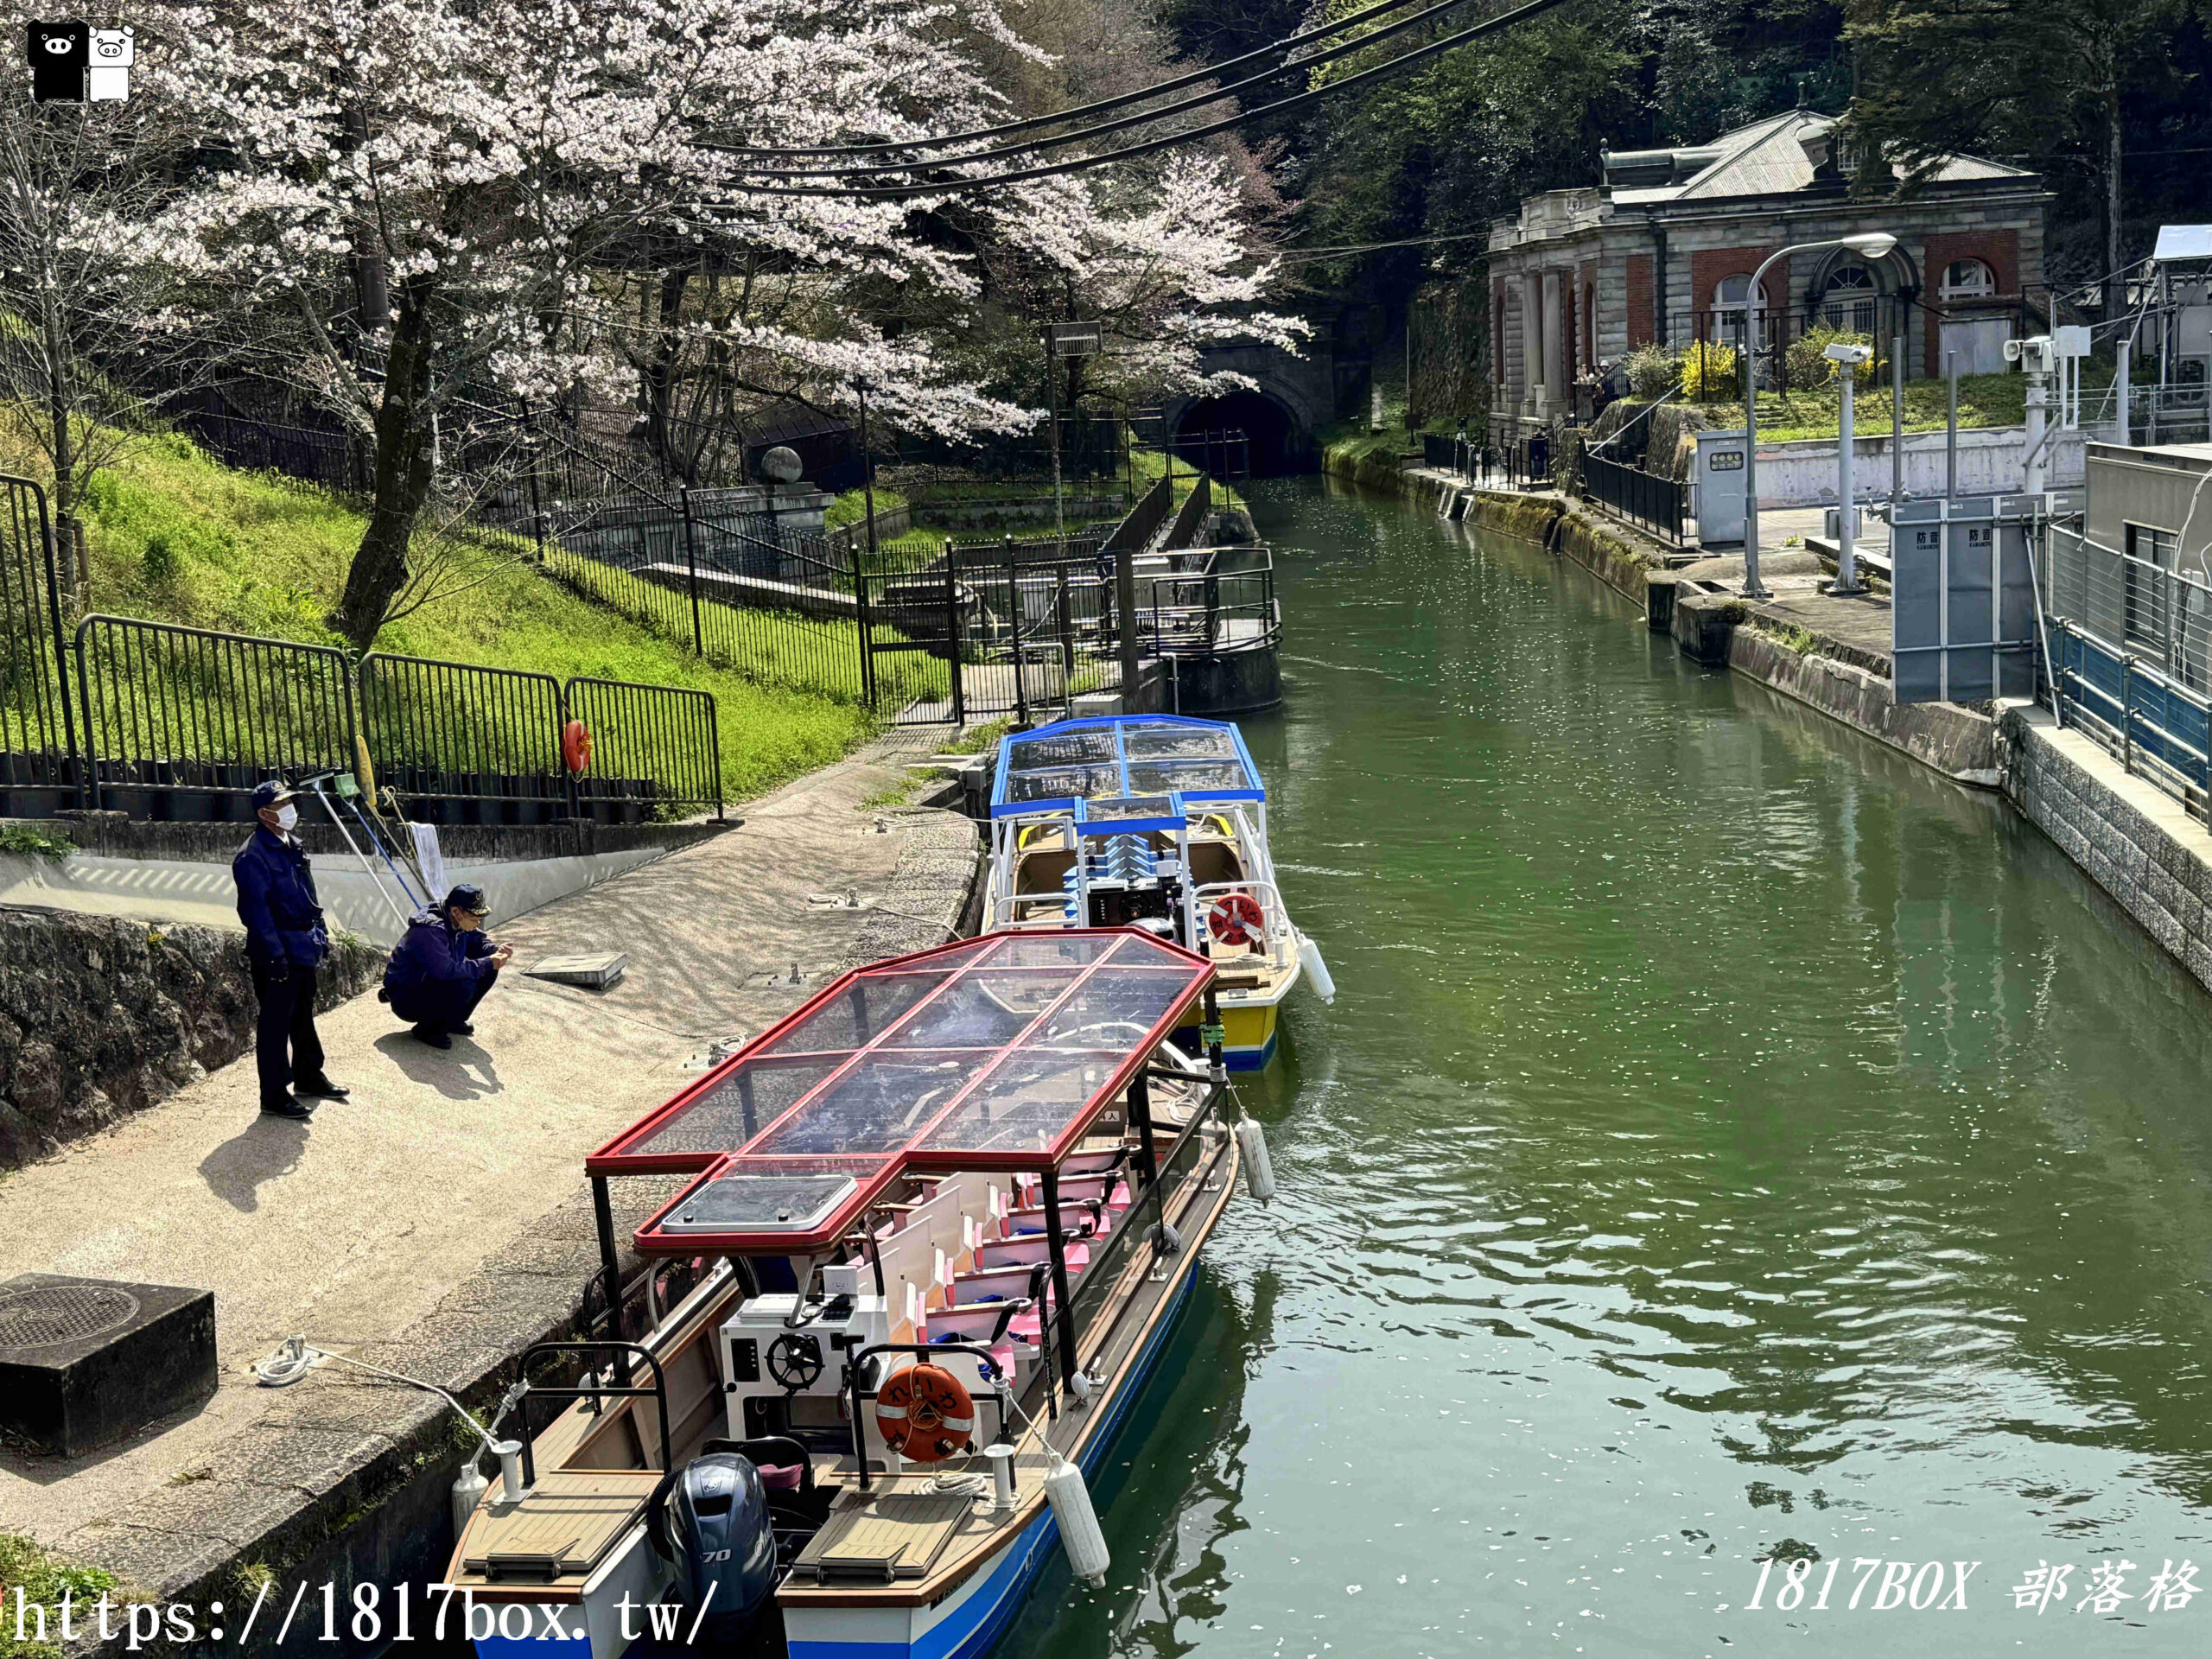 【京都景點】蹴上傾斜鐵道櫻花。日本遺產琵琶湖疏水